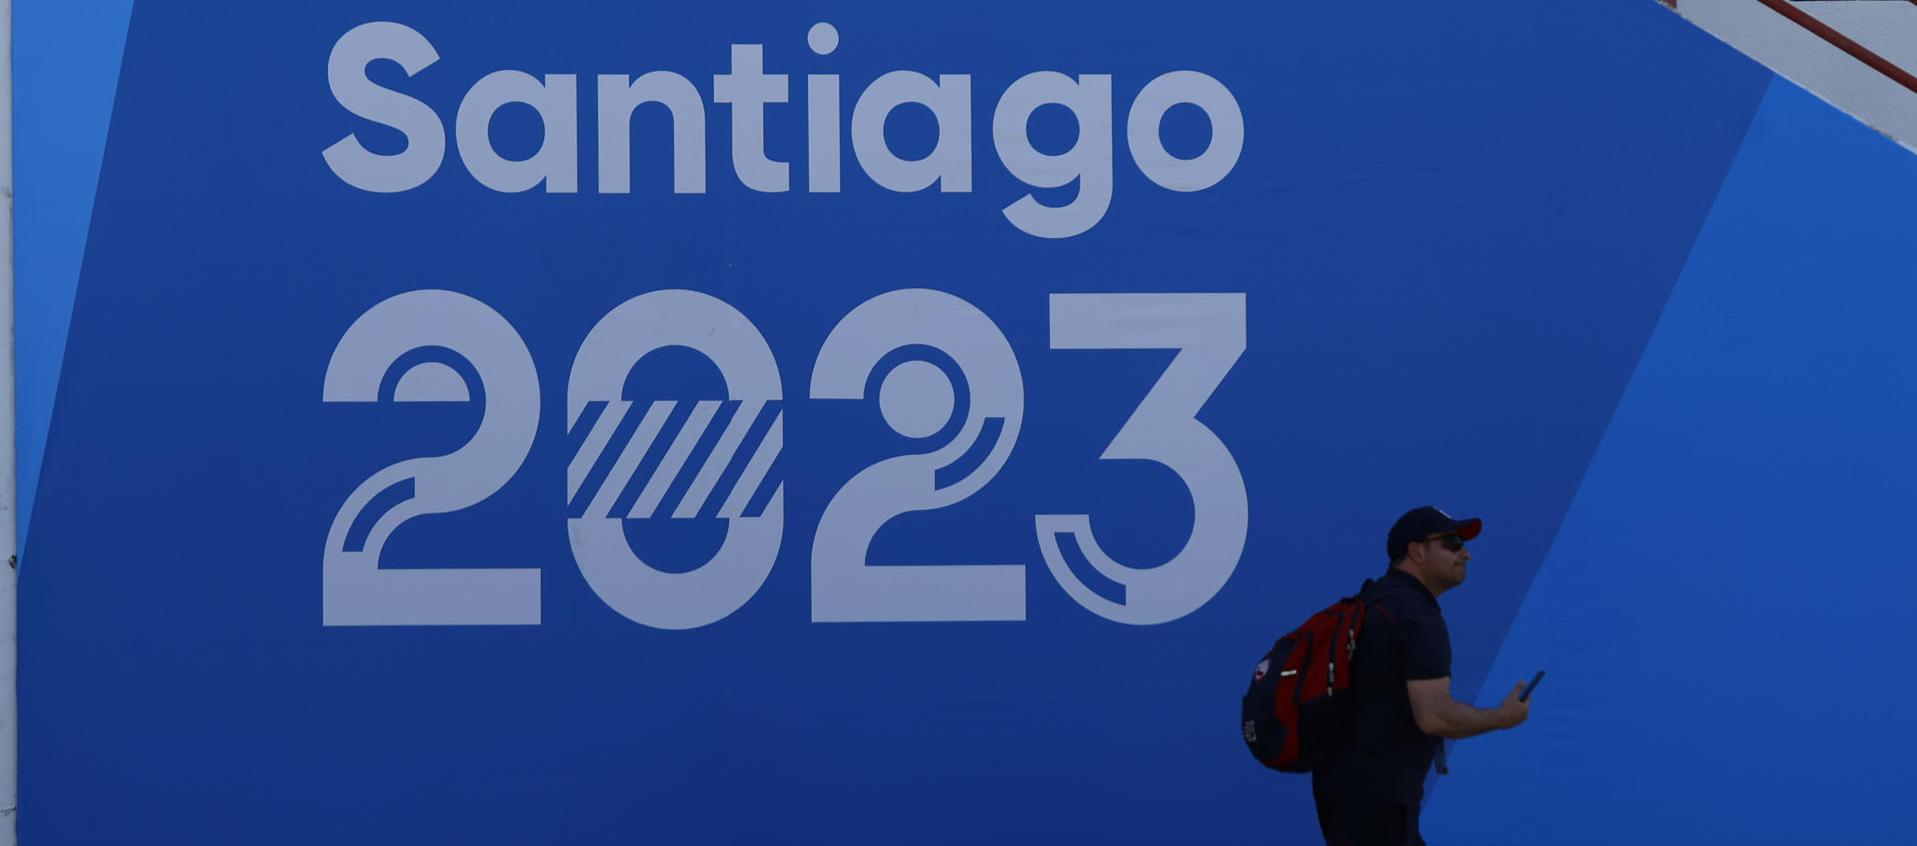 Un hombre camina frente a un cartel de Santiago 2023.